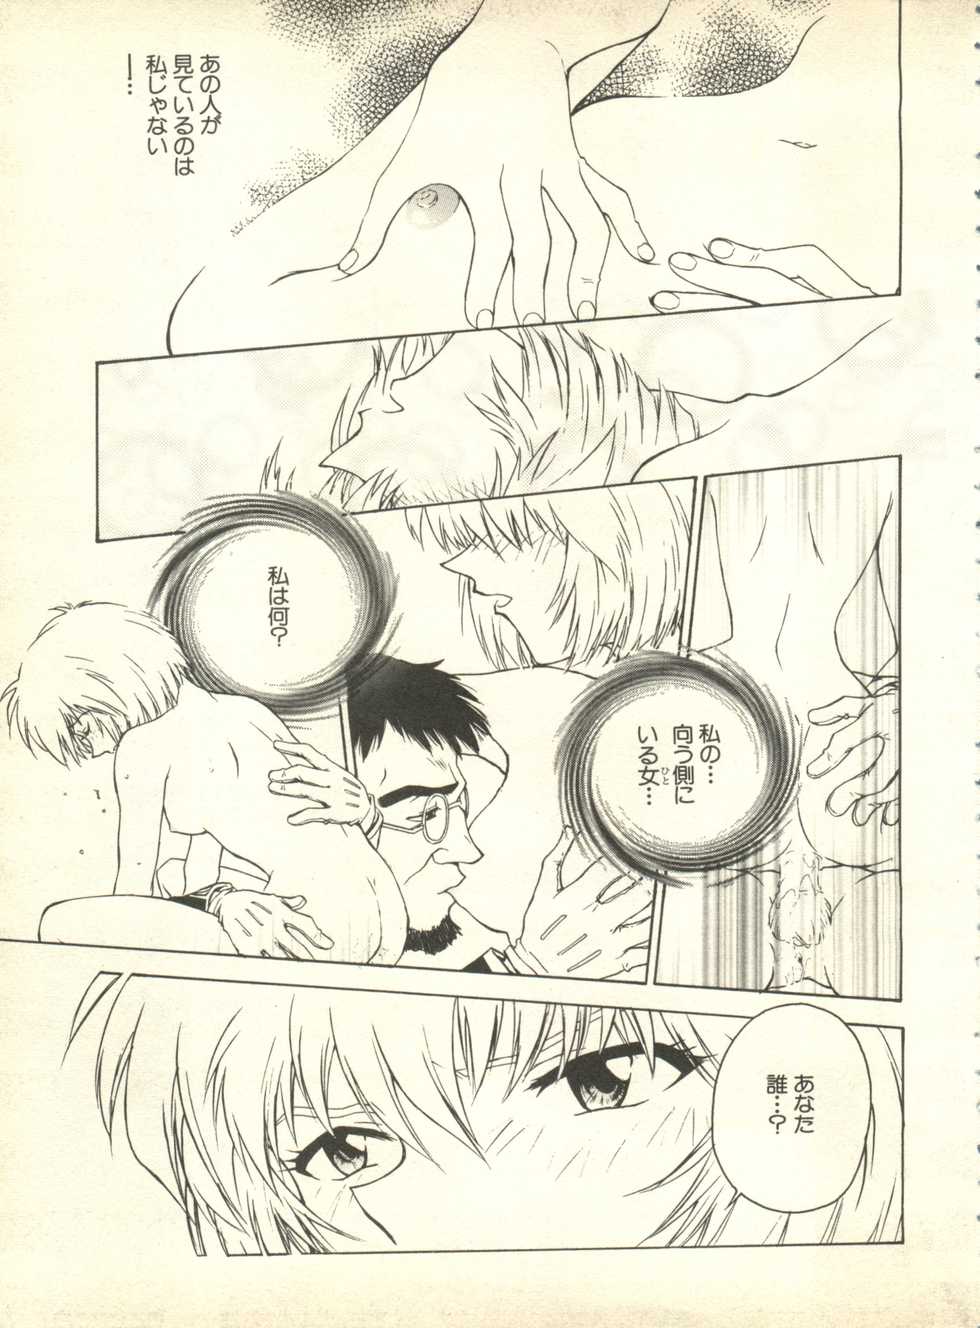 [Anthology] Shitsurakuen 4 - Paradise Lost 4 (Neon Genesis Evangelion) - Page 8